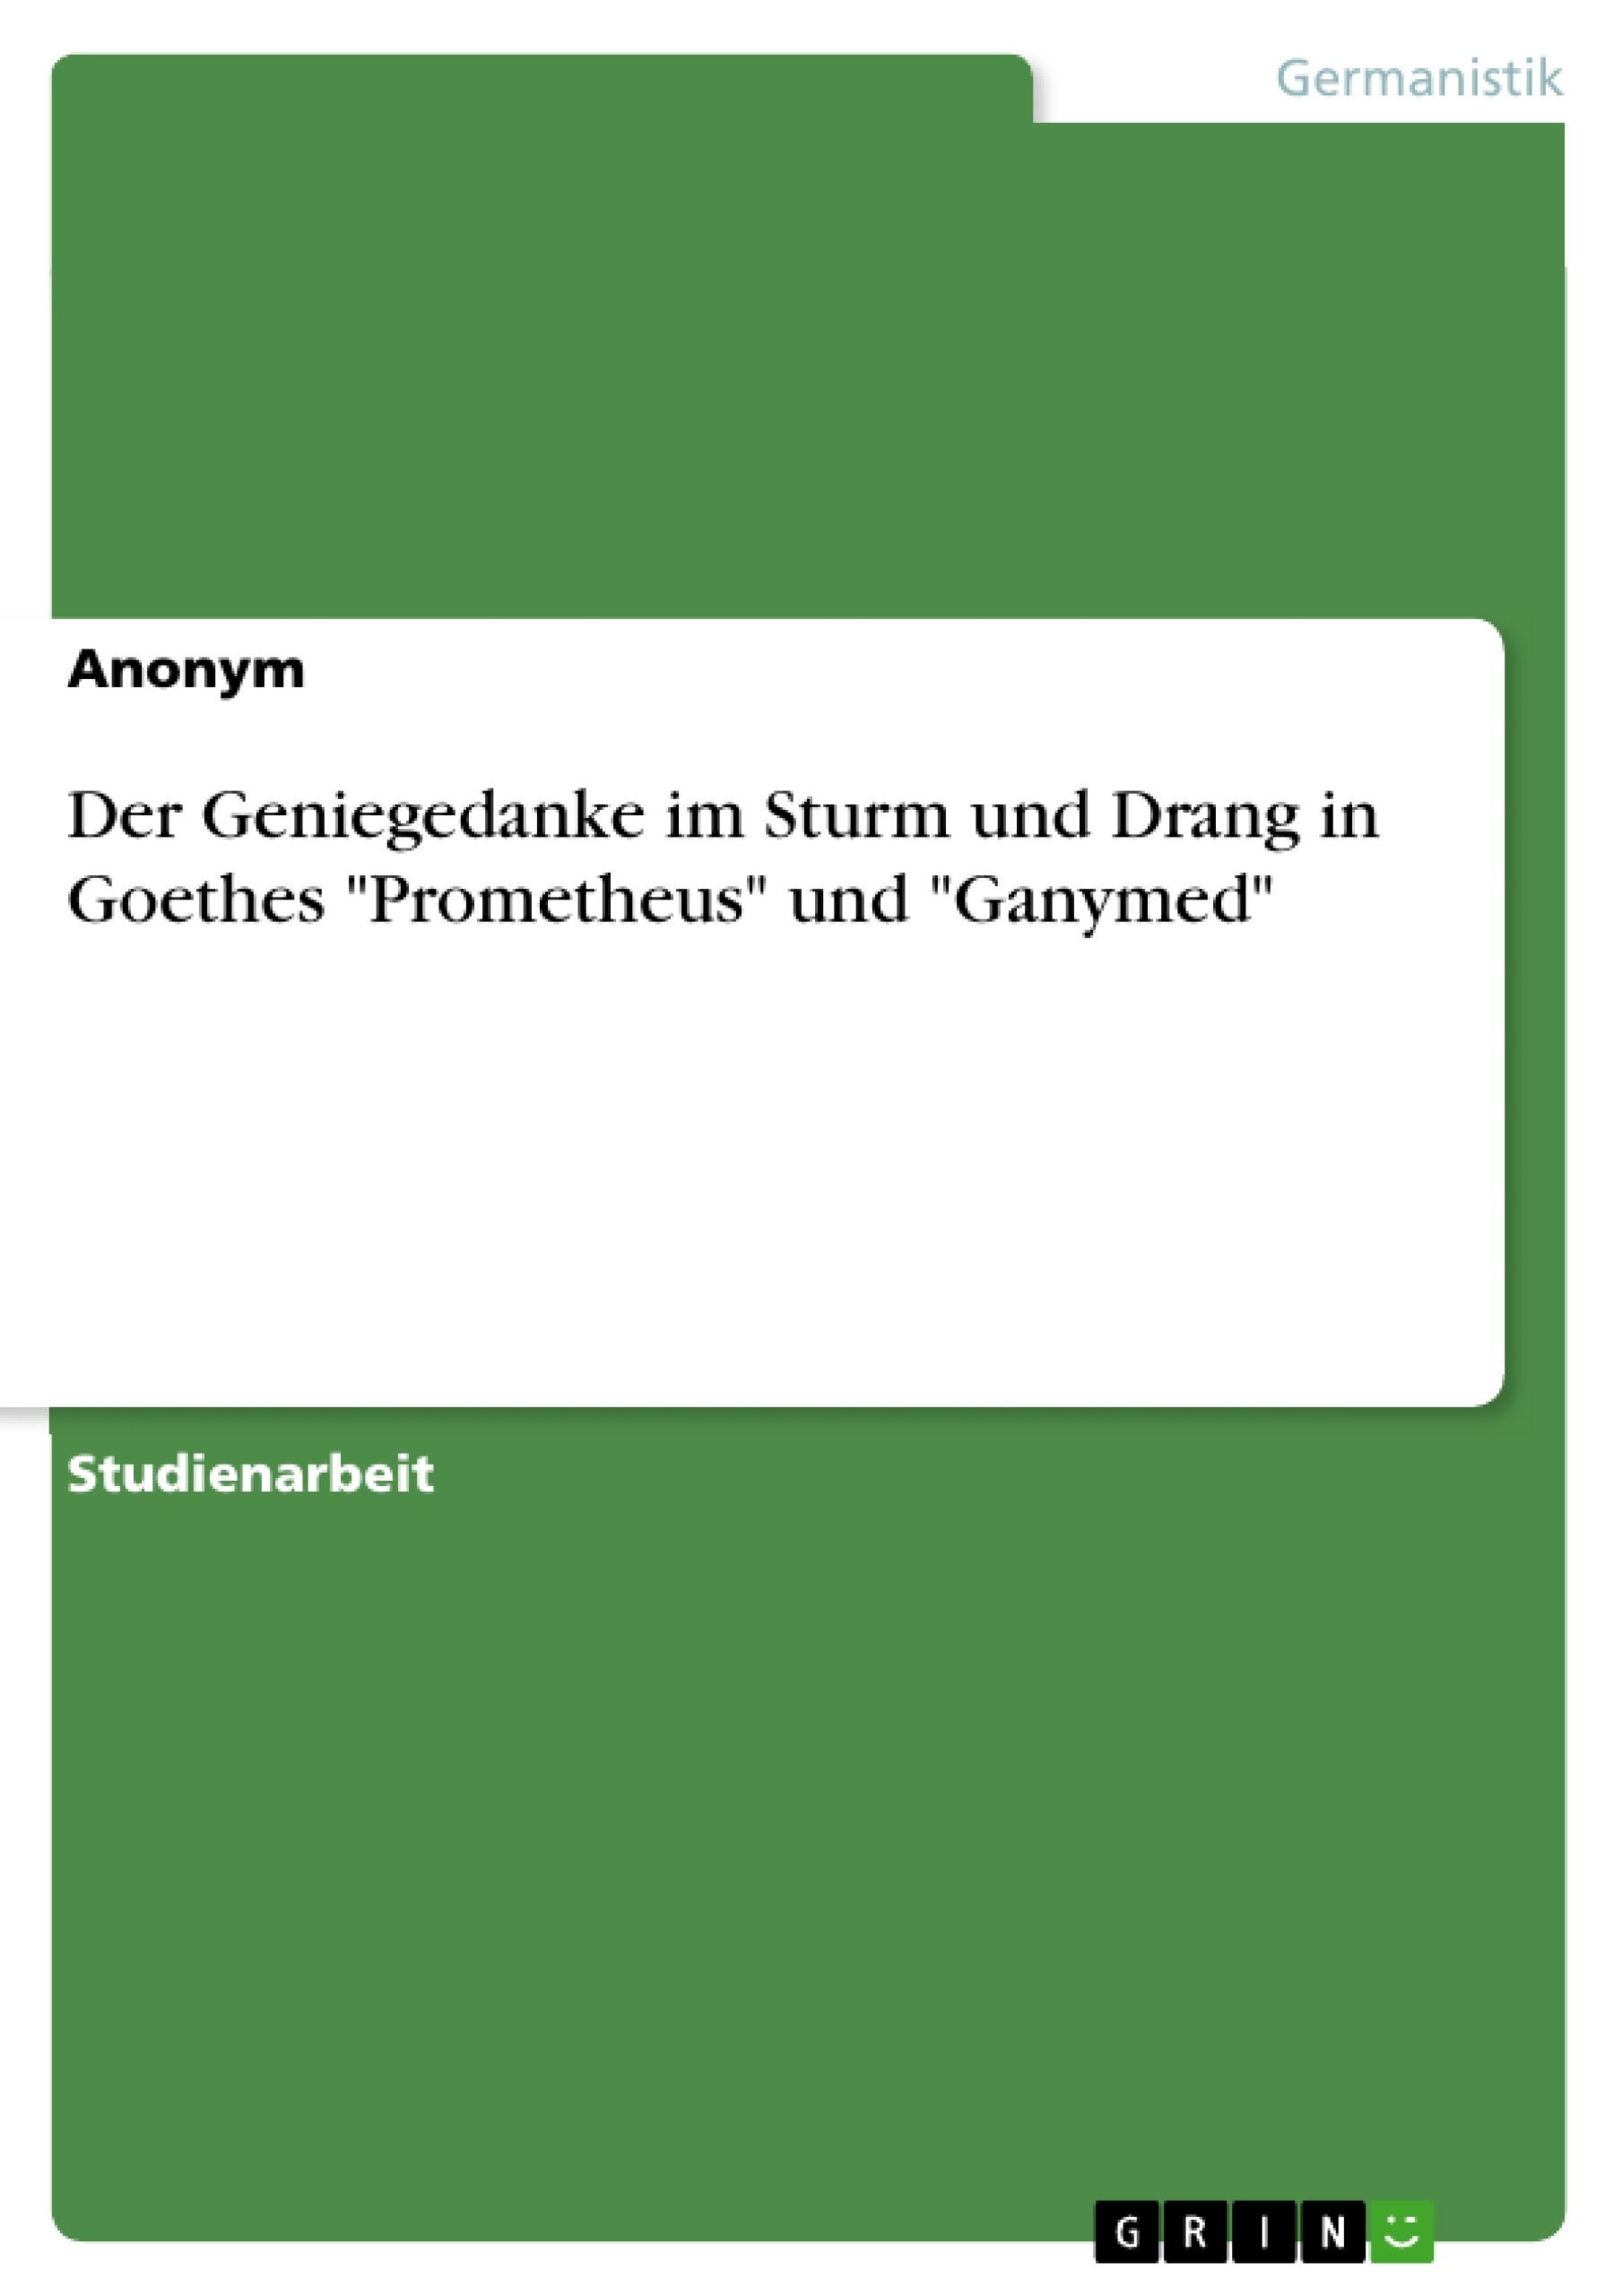 Title: Der Geniegedanke im Sturm und Drang in Goethes "Prometheus" und "Ganymed"